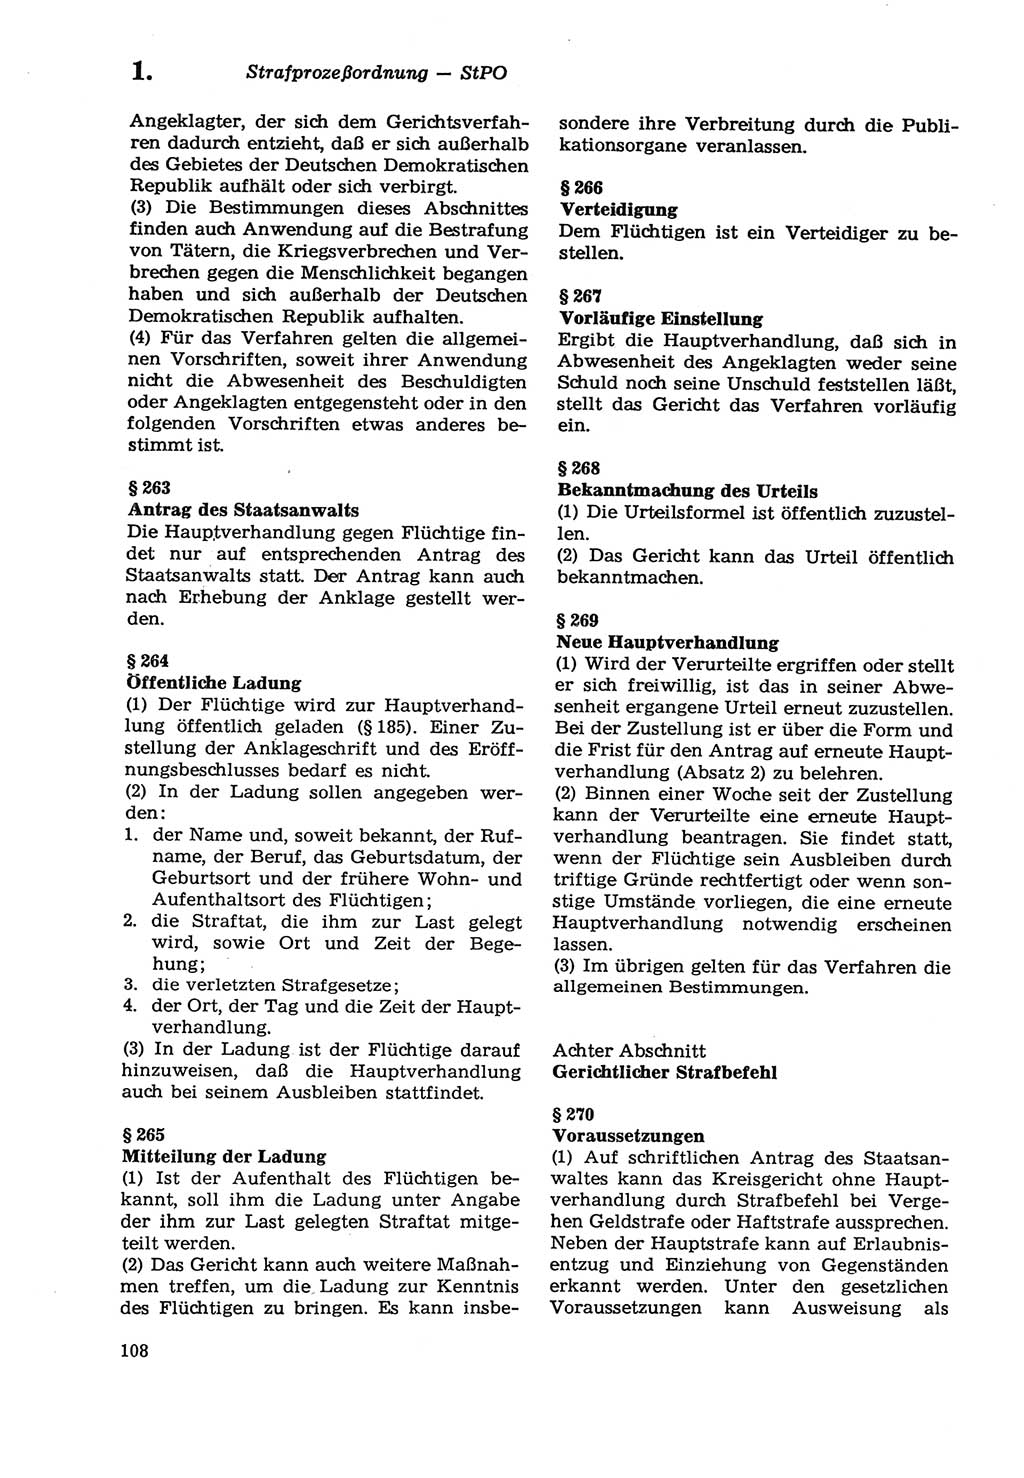 Strafprozeßordnung (StPO) der Deutschen Demokratischen Republik (DDR) sowie angrenzende Gesetze und Bestimmungen 1979, Seite 108 (StPO DDR Ges. Best. 1979, S. 108)